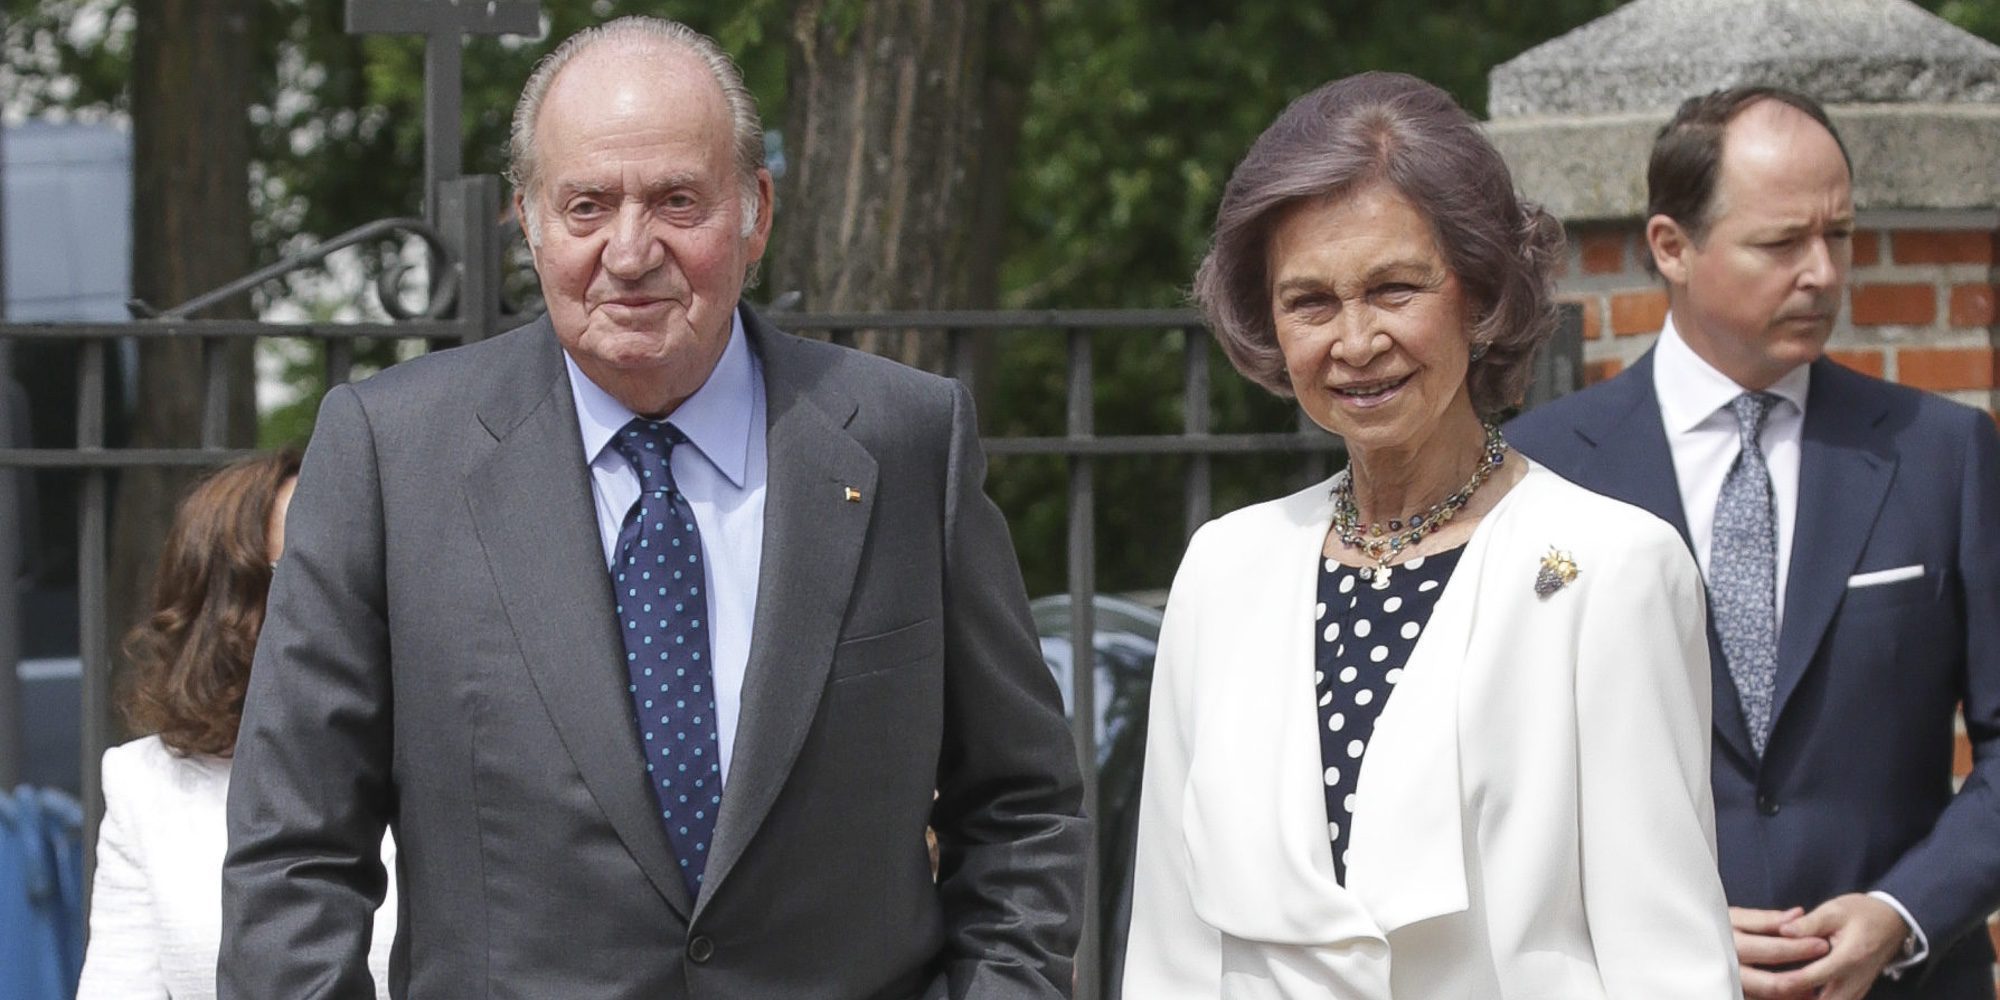 Los Reyes Juan Carlos y Sofía serán homenajeados en 2018 por su 80 cumpleaños y el 40 aniversario de la Constitución